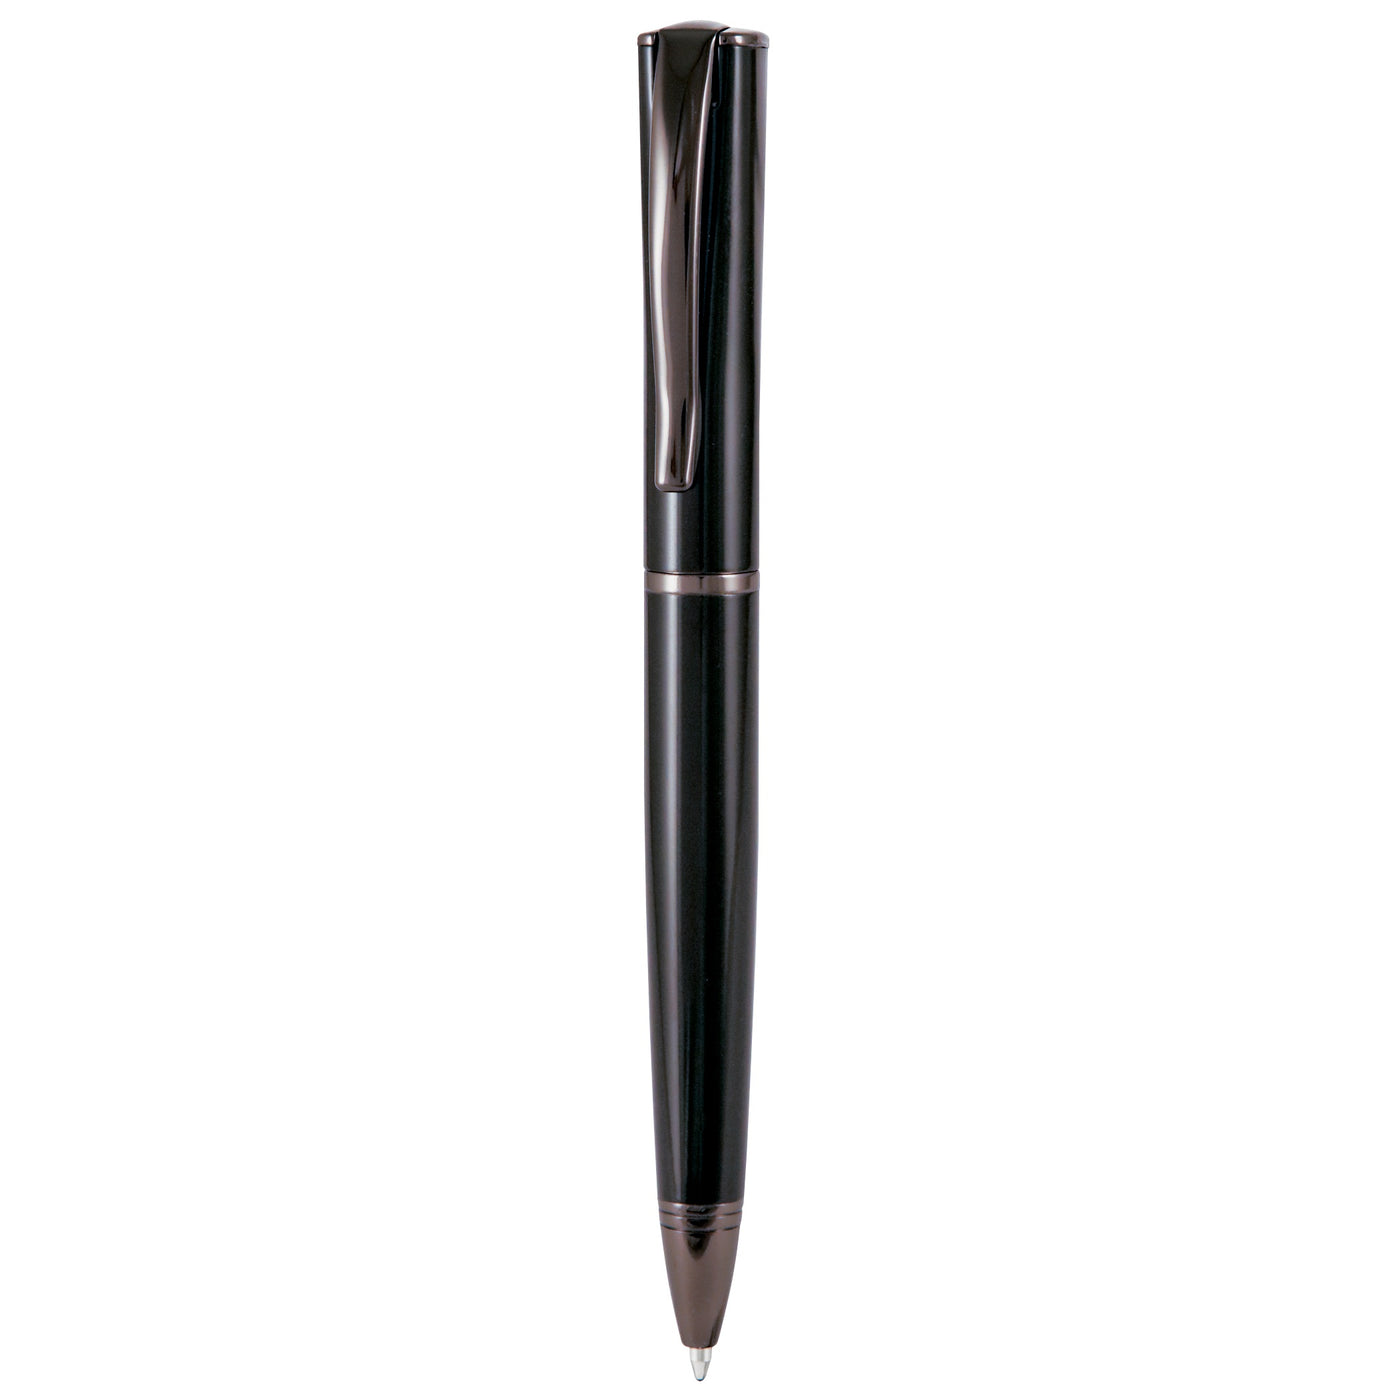 Monteverde Impressa Black Gunmetal Ballpoint Pen